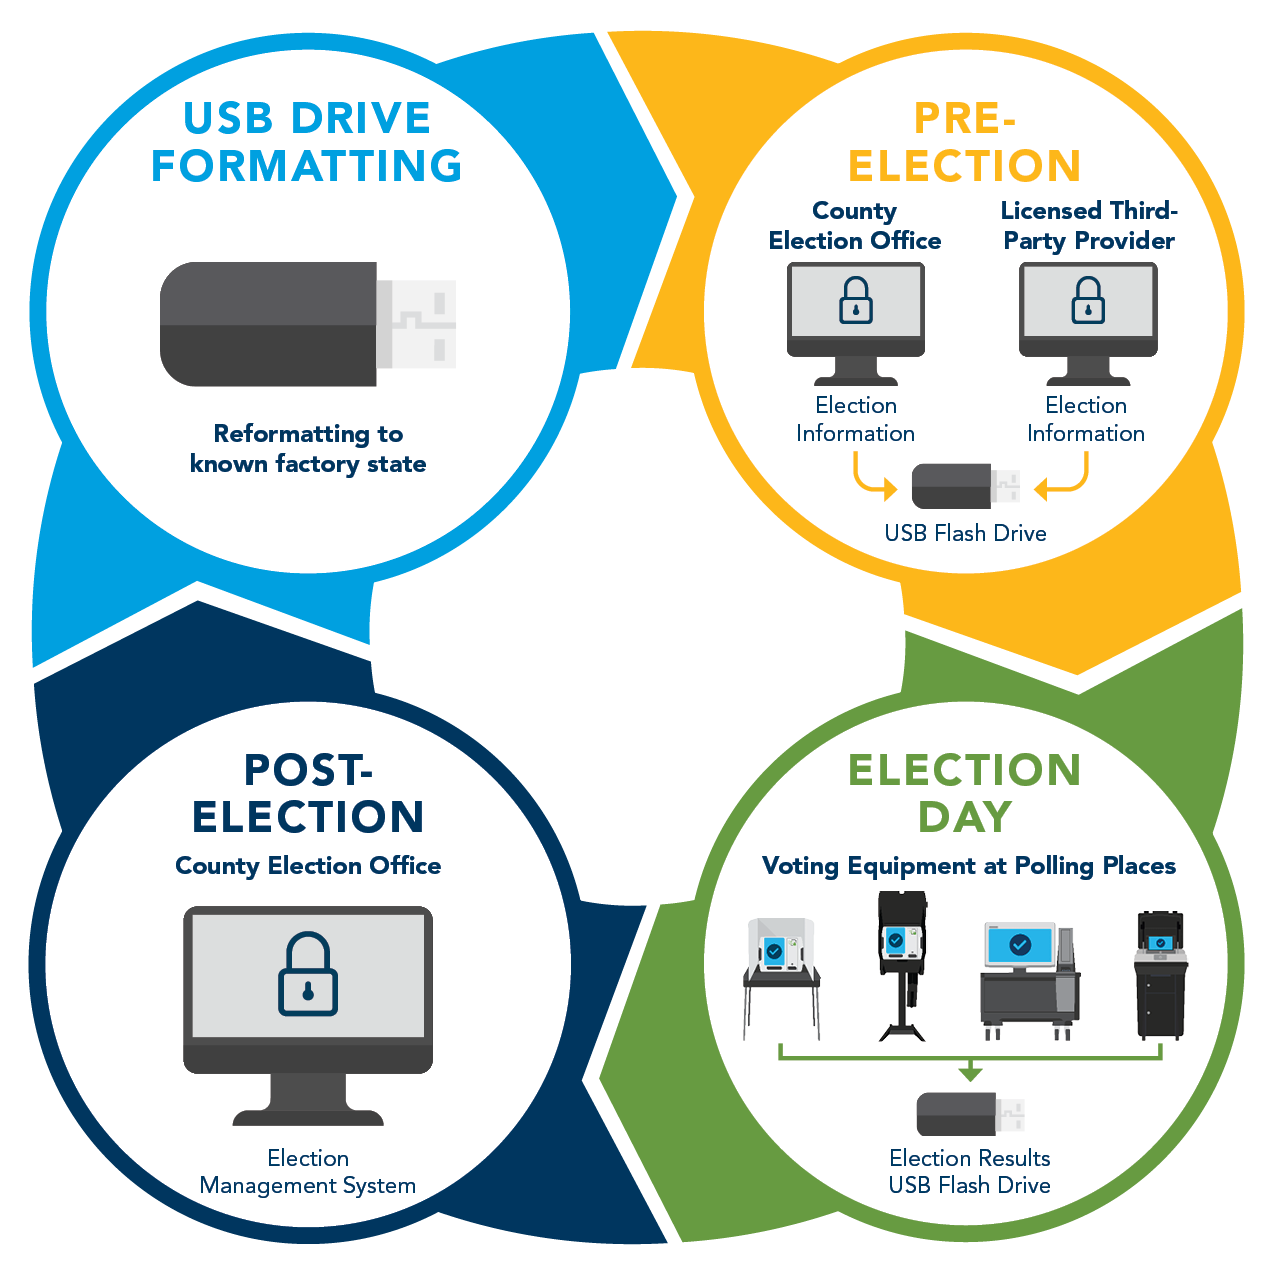 信息图表显示USB驱动器的循环，从格式化到选举准备，选举日，选举日，选举晚上，并返回格式化